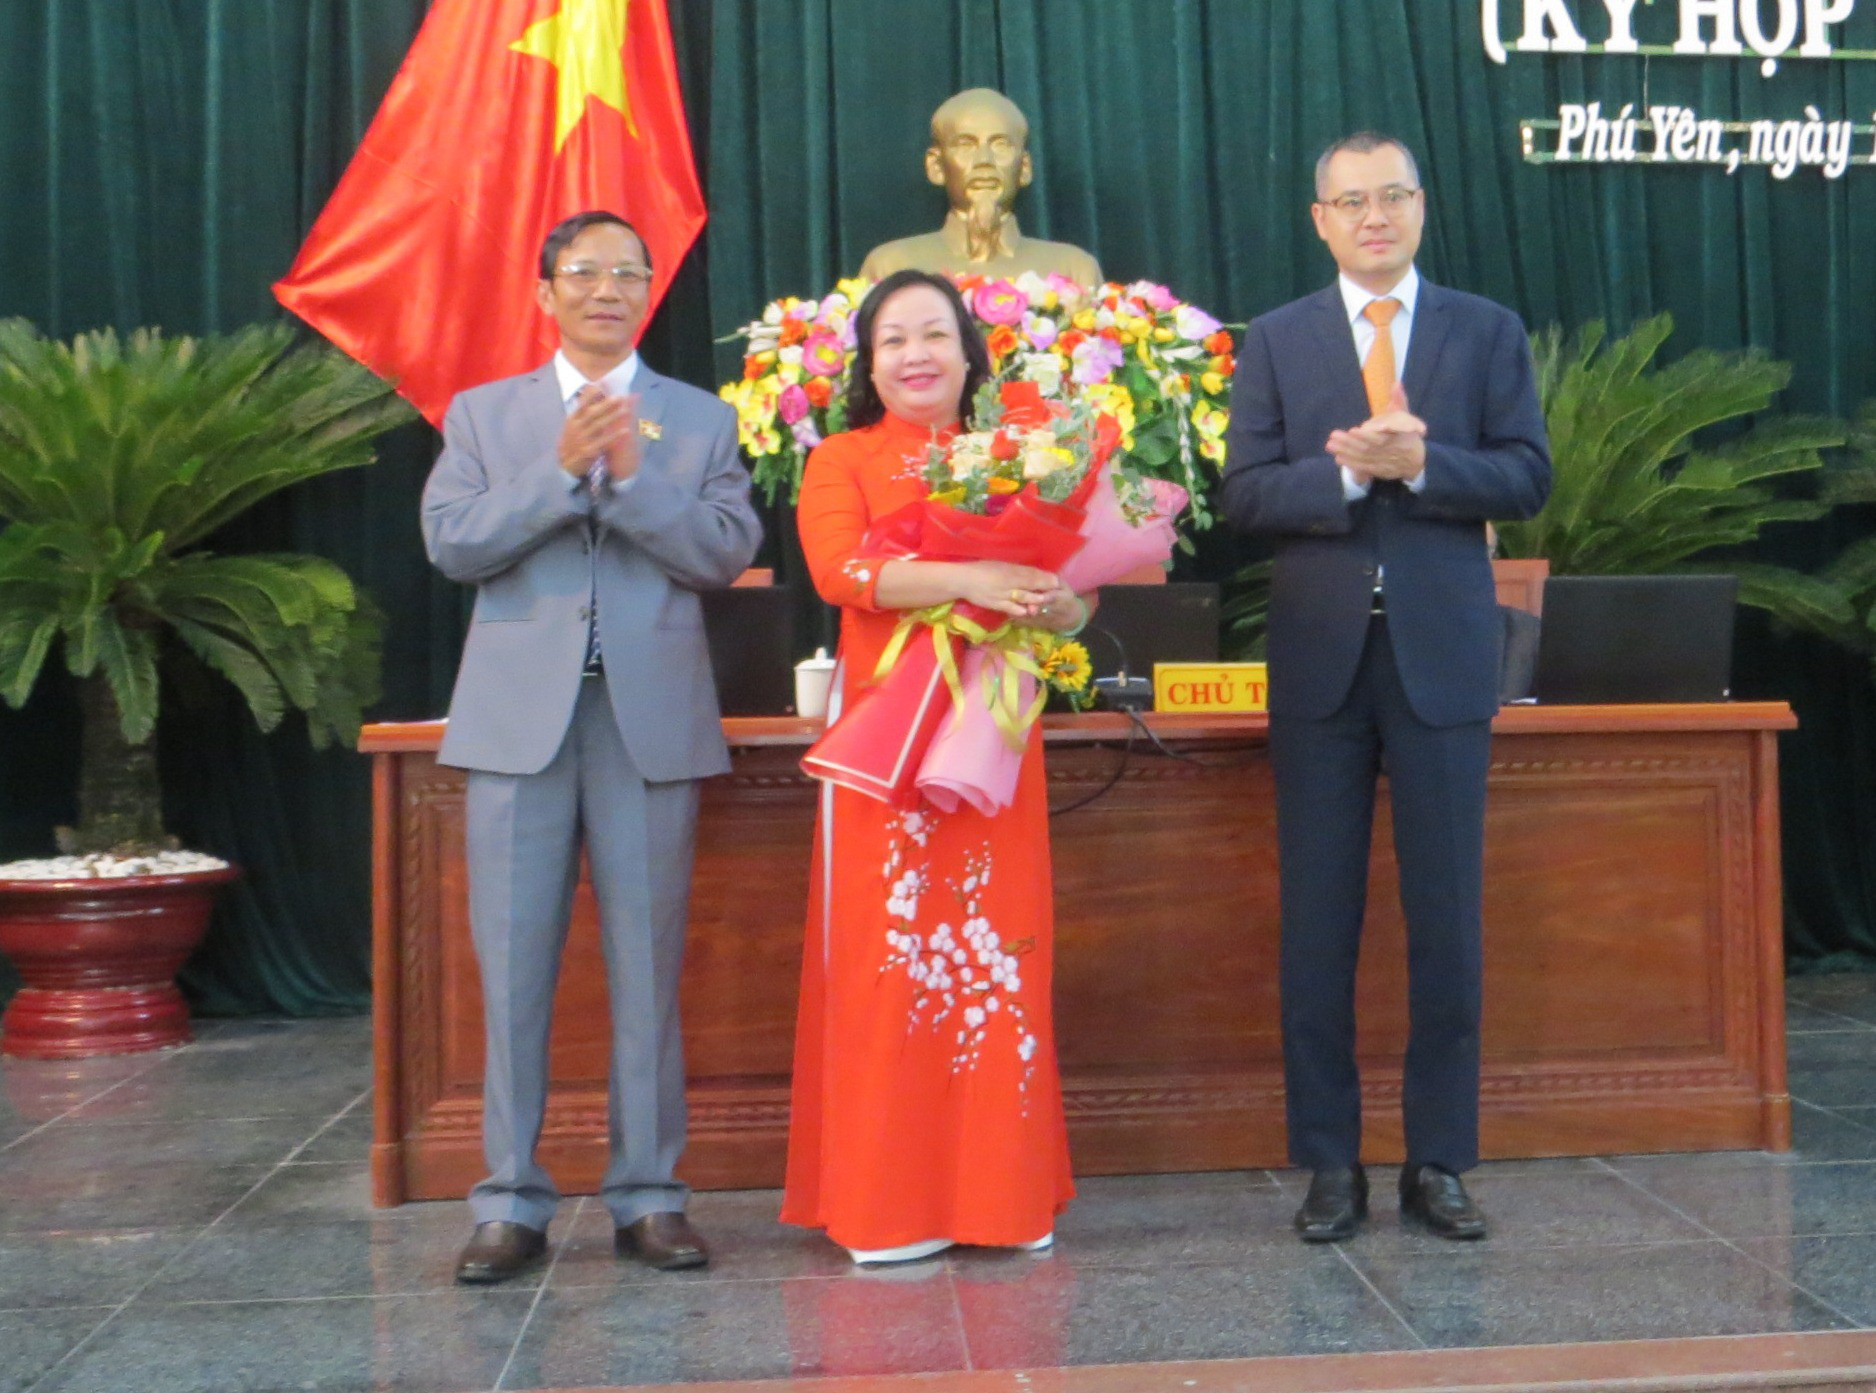 Tân Chủ tịch HĐND và UBND tỉnh Phú Yên đều sinh năm 1973 - Ảnh 1.